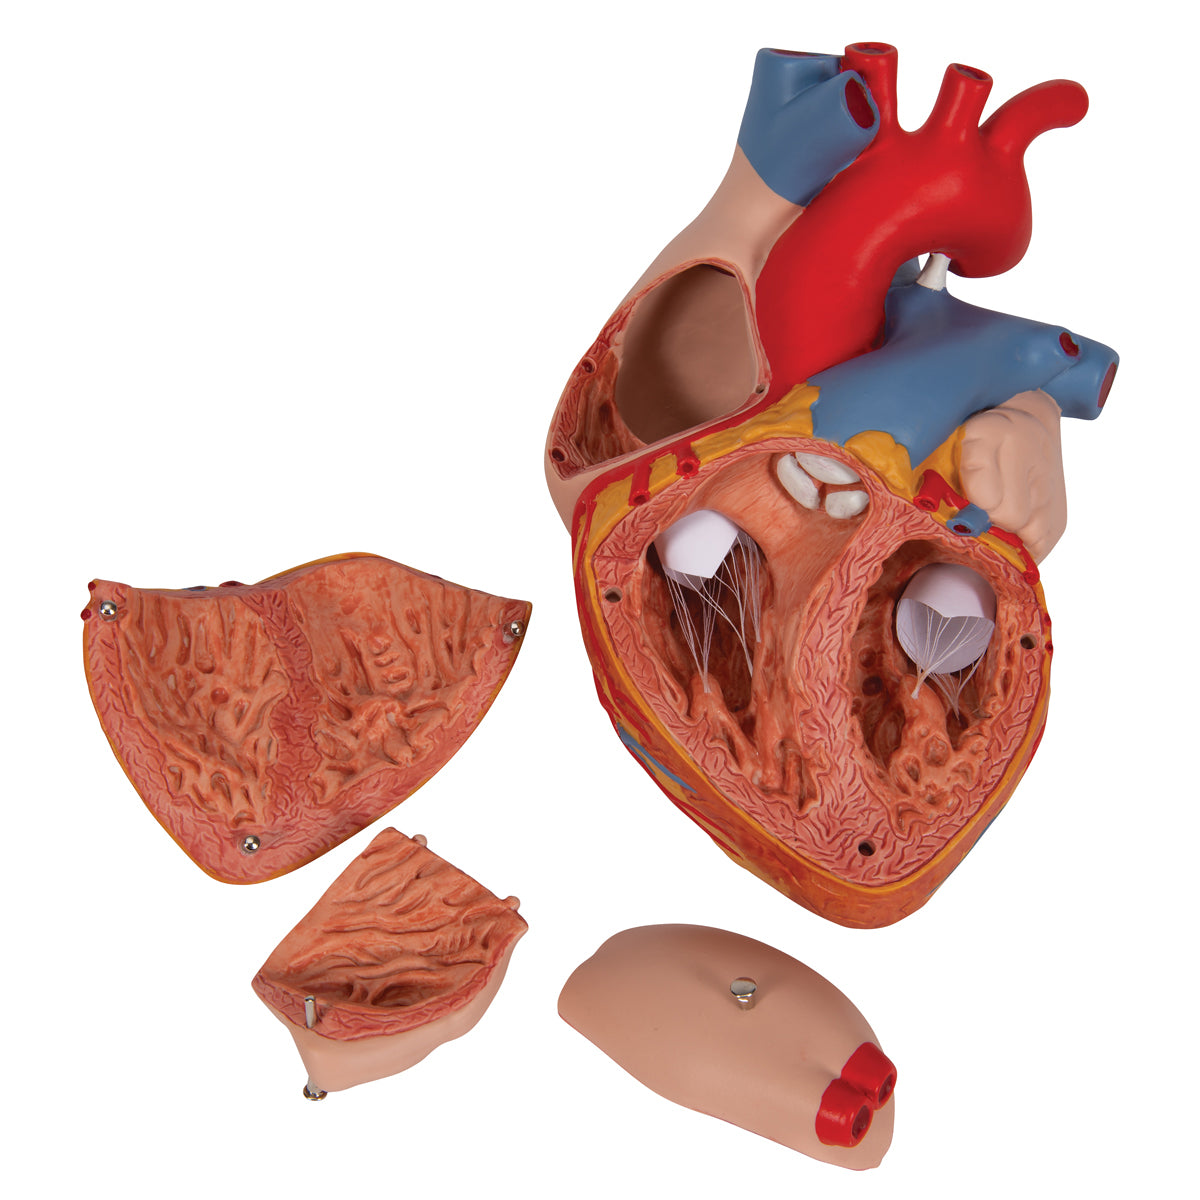 Handmålad hjärtmodell som har förstorats